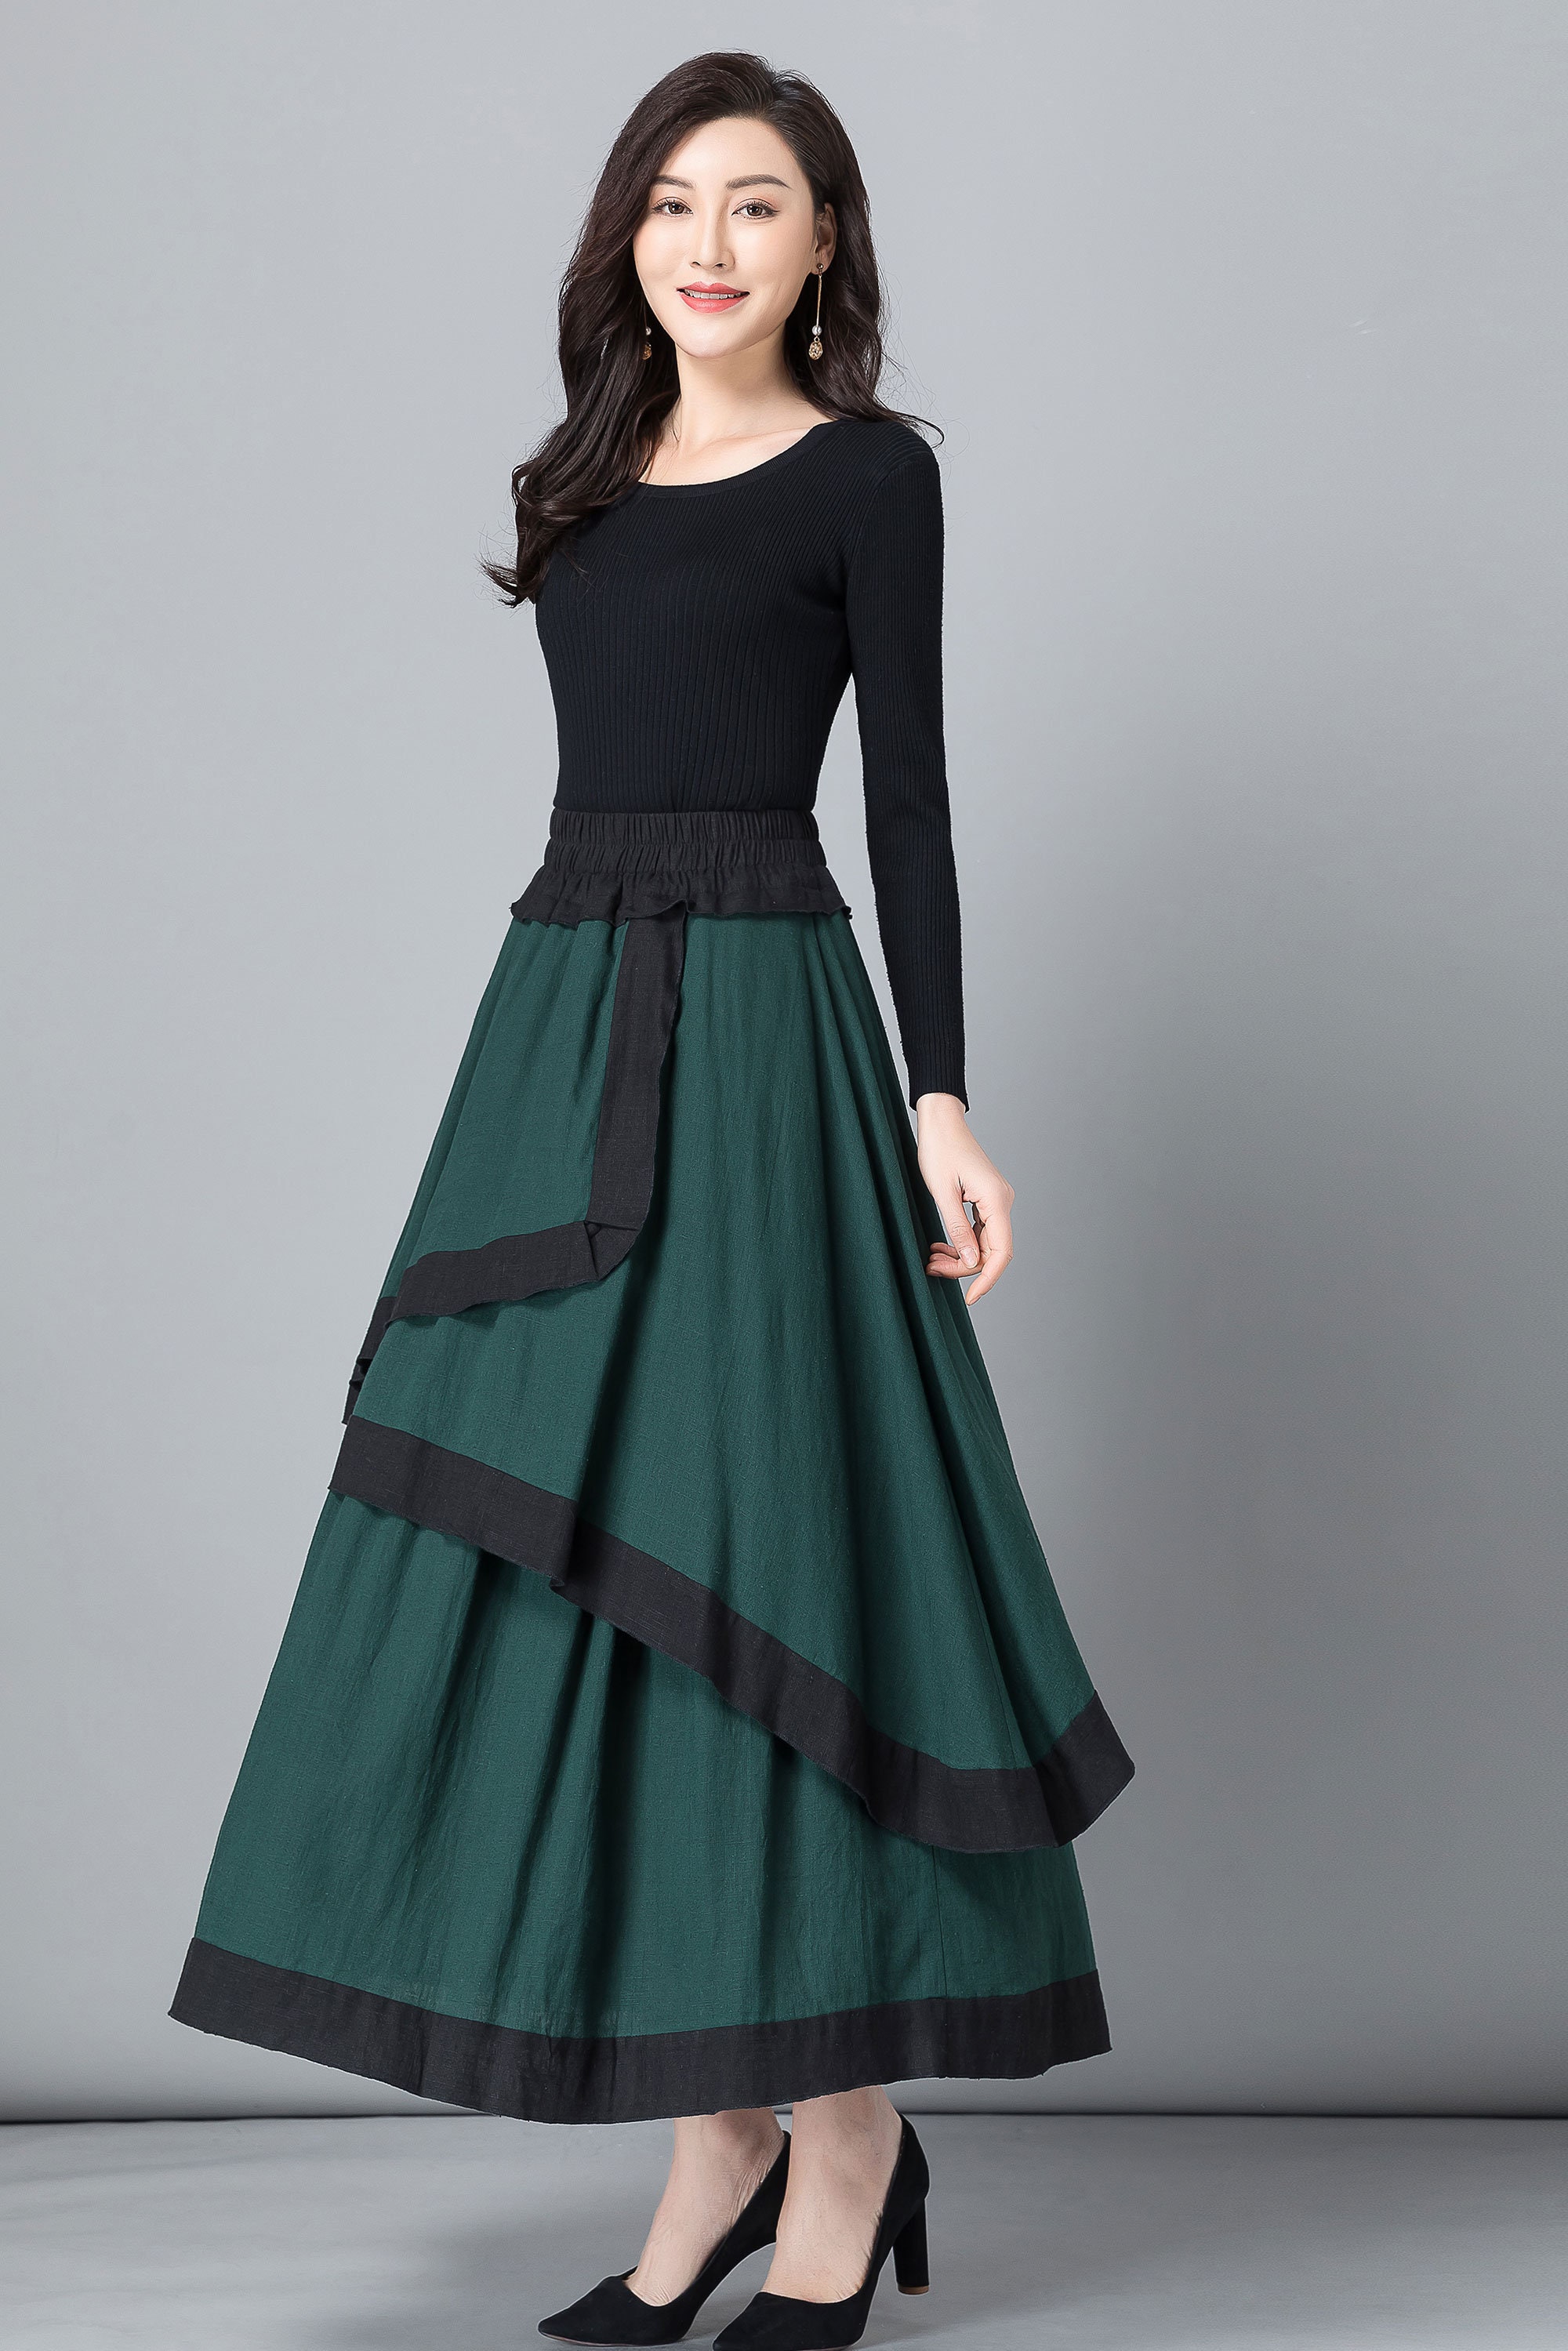 Linen skirt Green skirt Long skirt for women womens skirt | Etsy